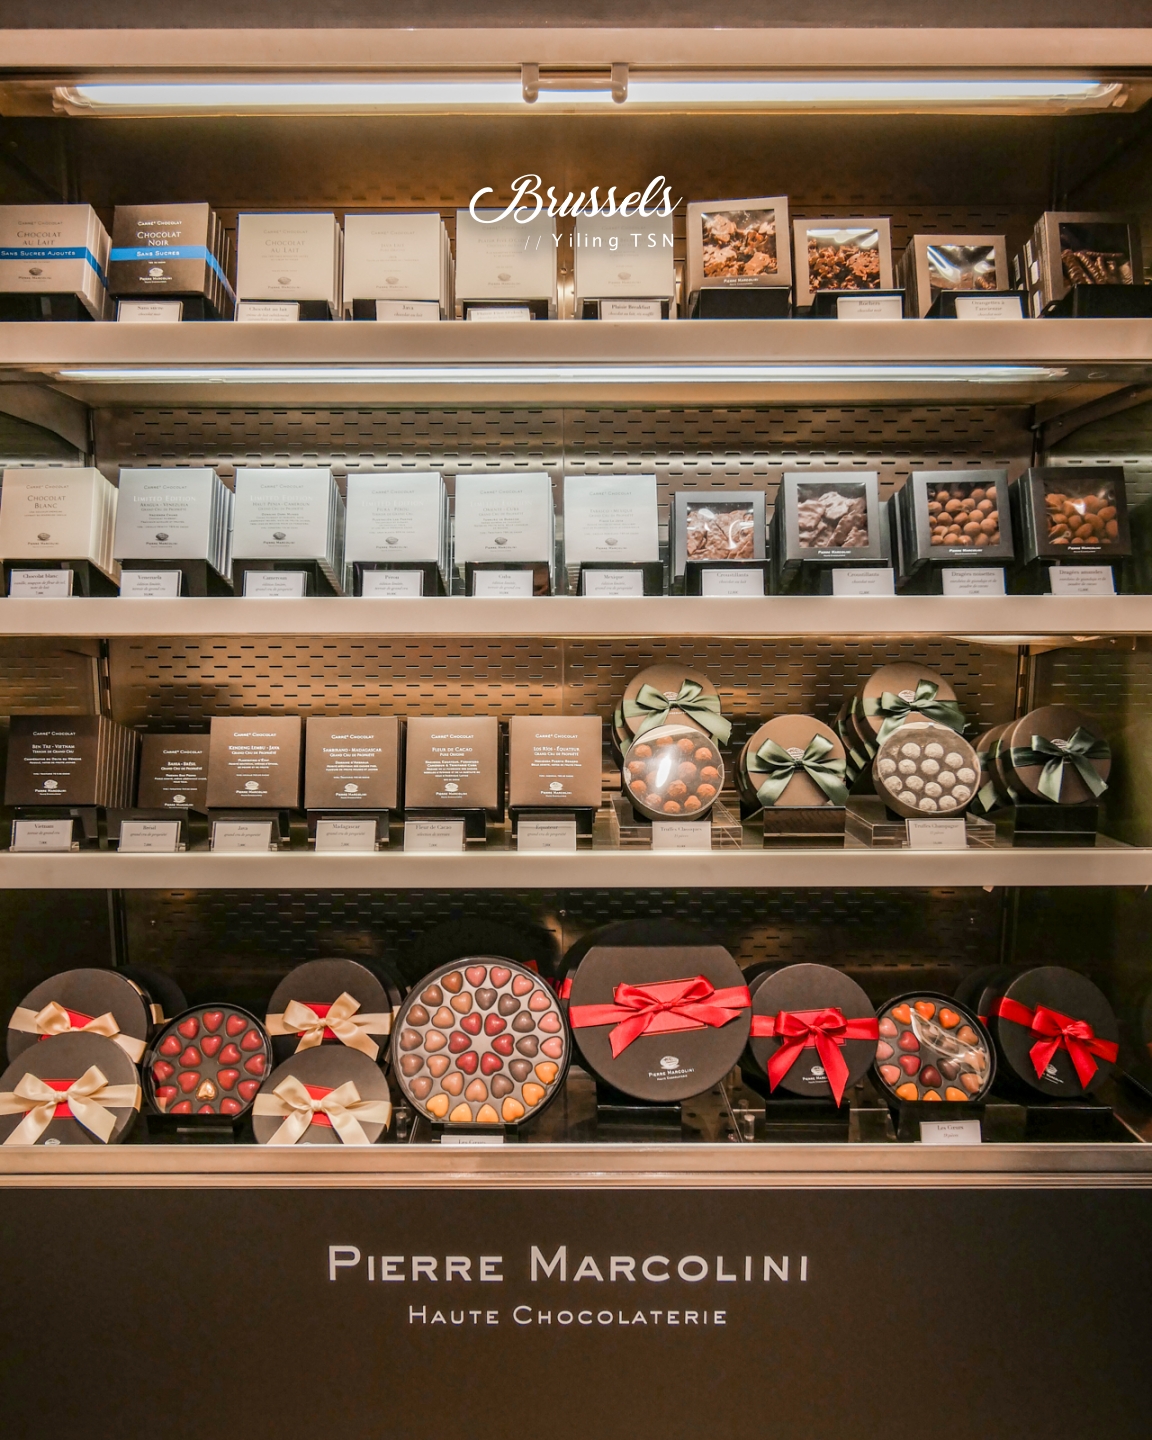 比利時巧克力 Pierre Marcolini 巧克力天才大師